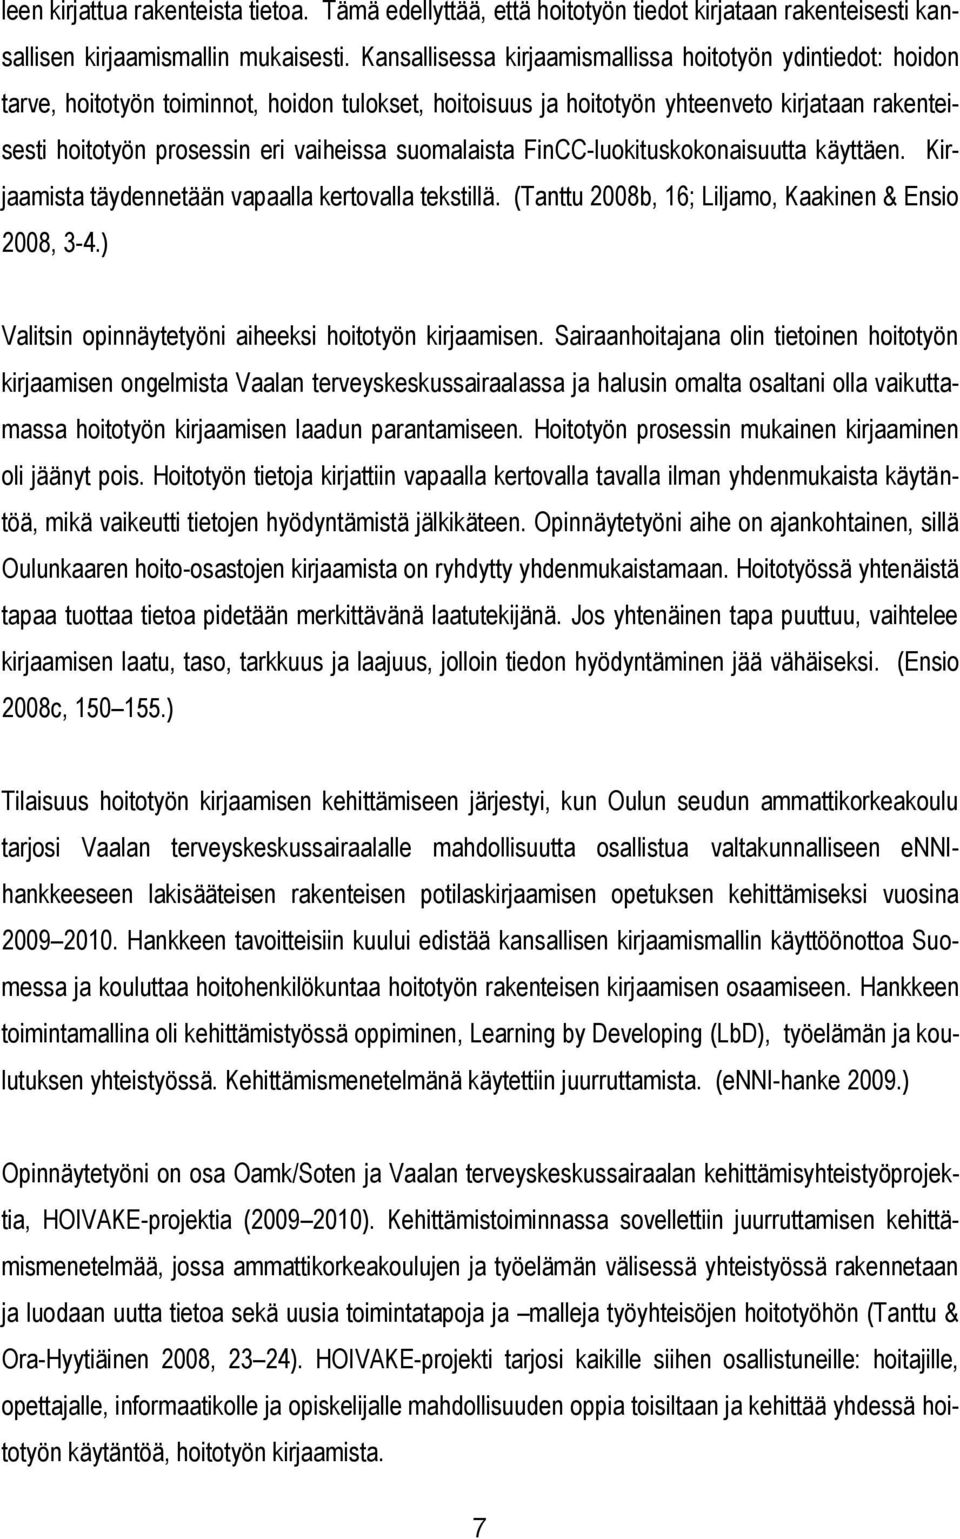 suomalaista FinCC-luokituskokonaisuutta käyttäen. Kirjaamista täydennetään vapaalla kertovalla tekstillä. (Tanttu 2008b, 16; Liljamo, Kaakinen & Ensio 2008, 3-4.